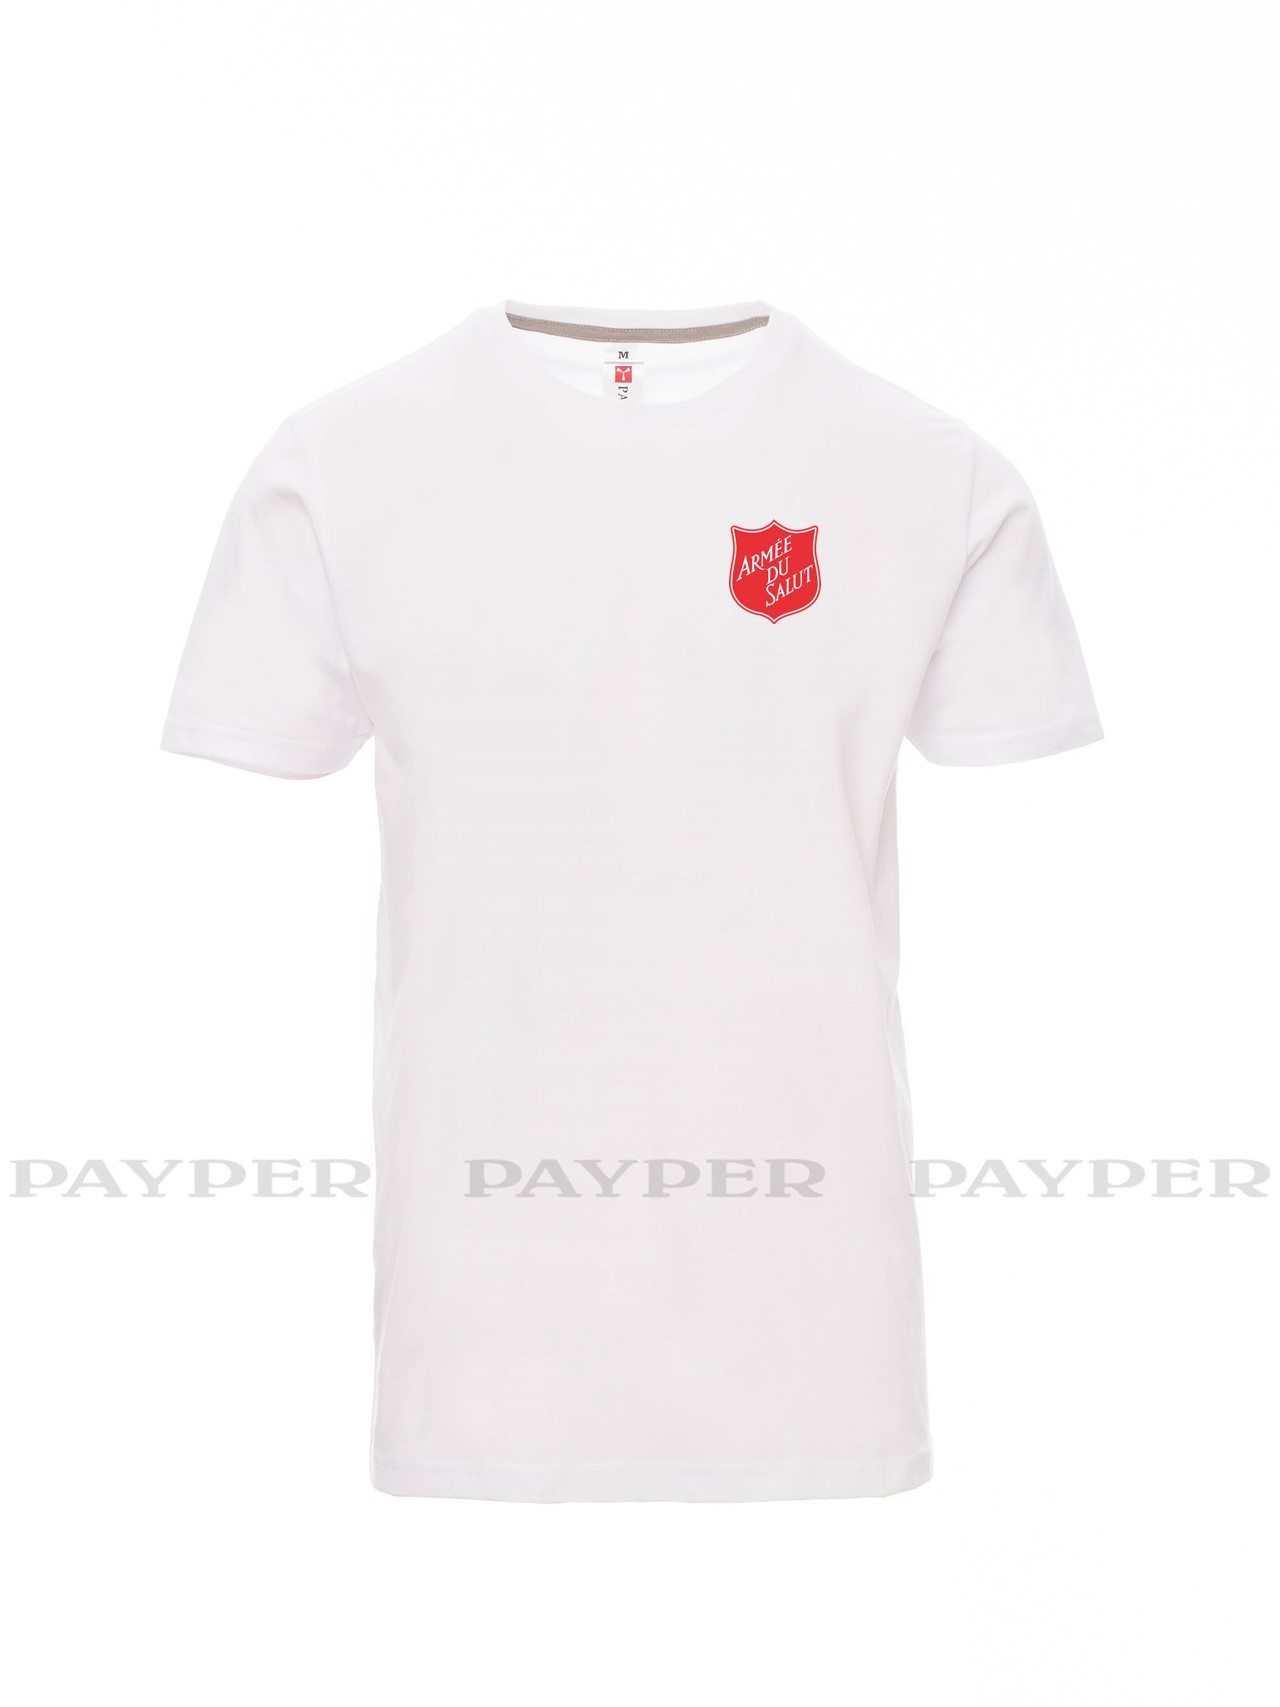 T-shirt homme blanc avec logo serigraphié